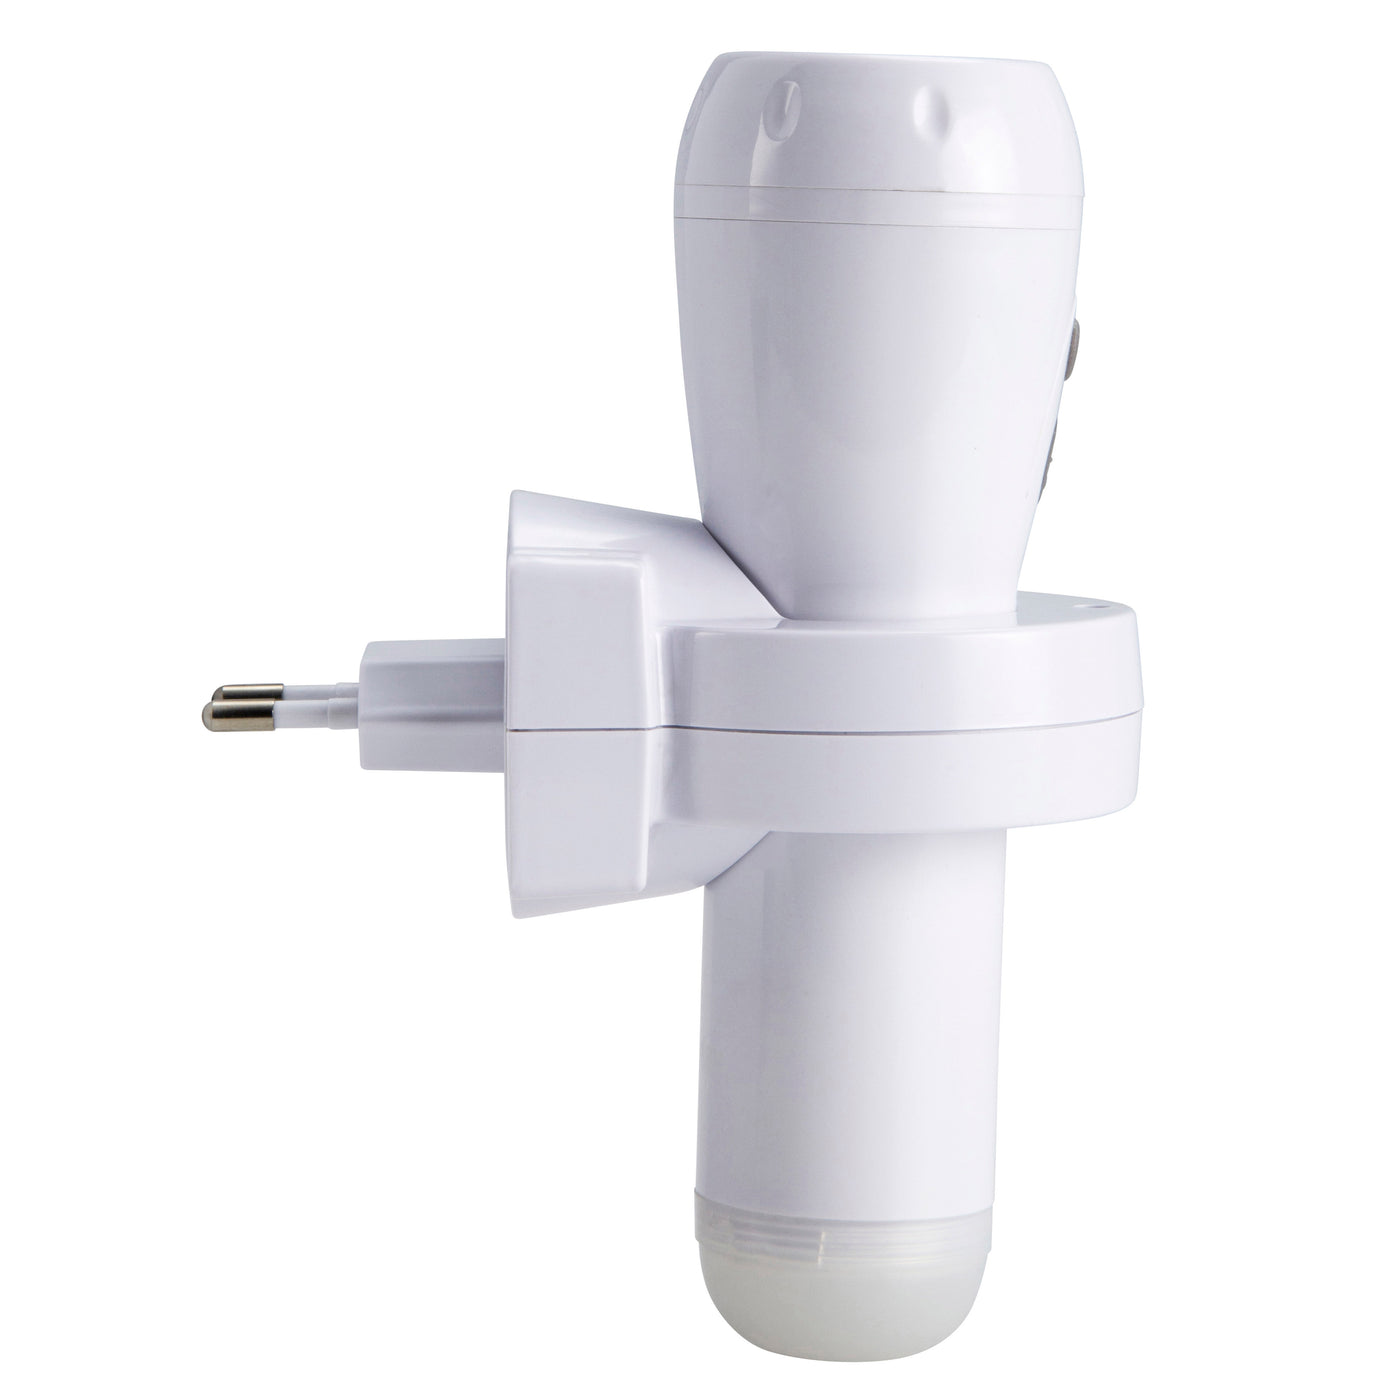 Alecto ATL-110 - Lampe de poche LED rechargeable / veilleuse LED automatique, blanc